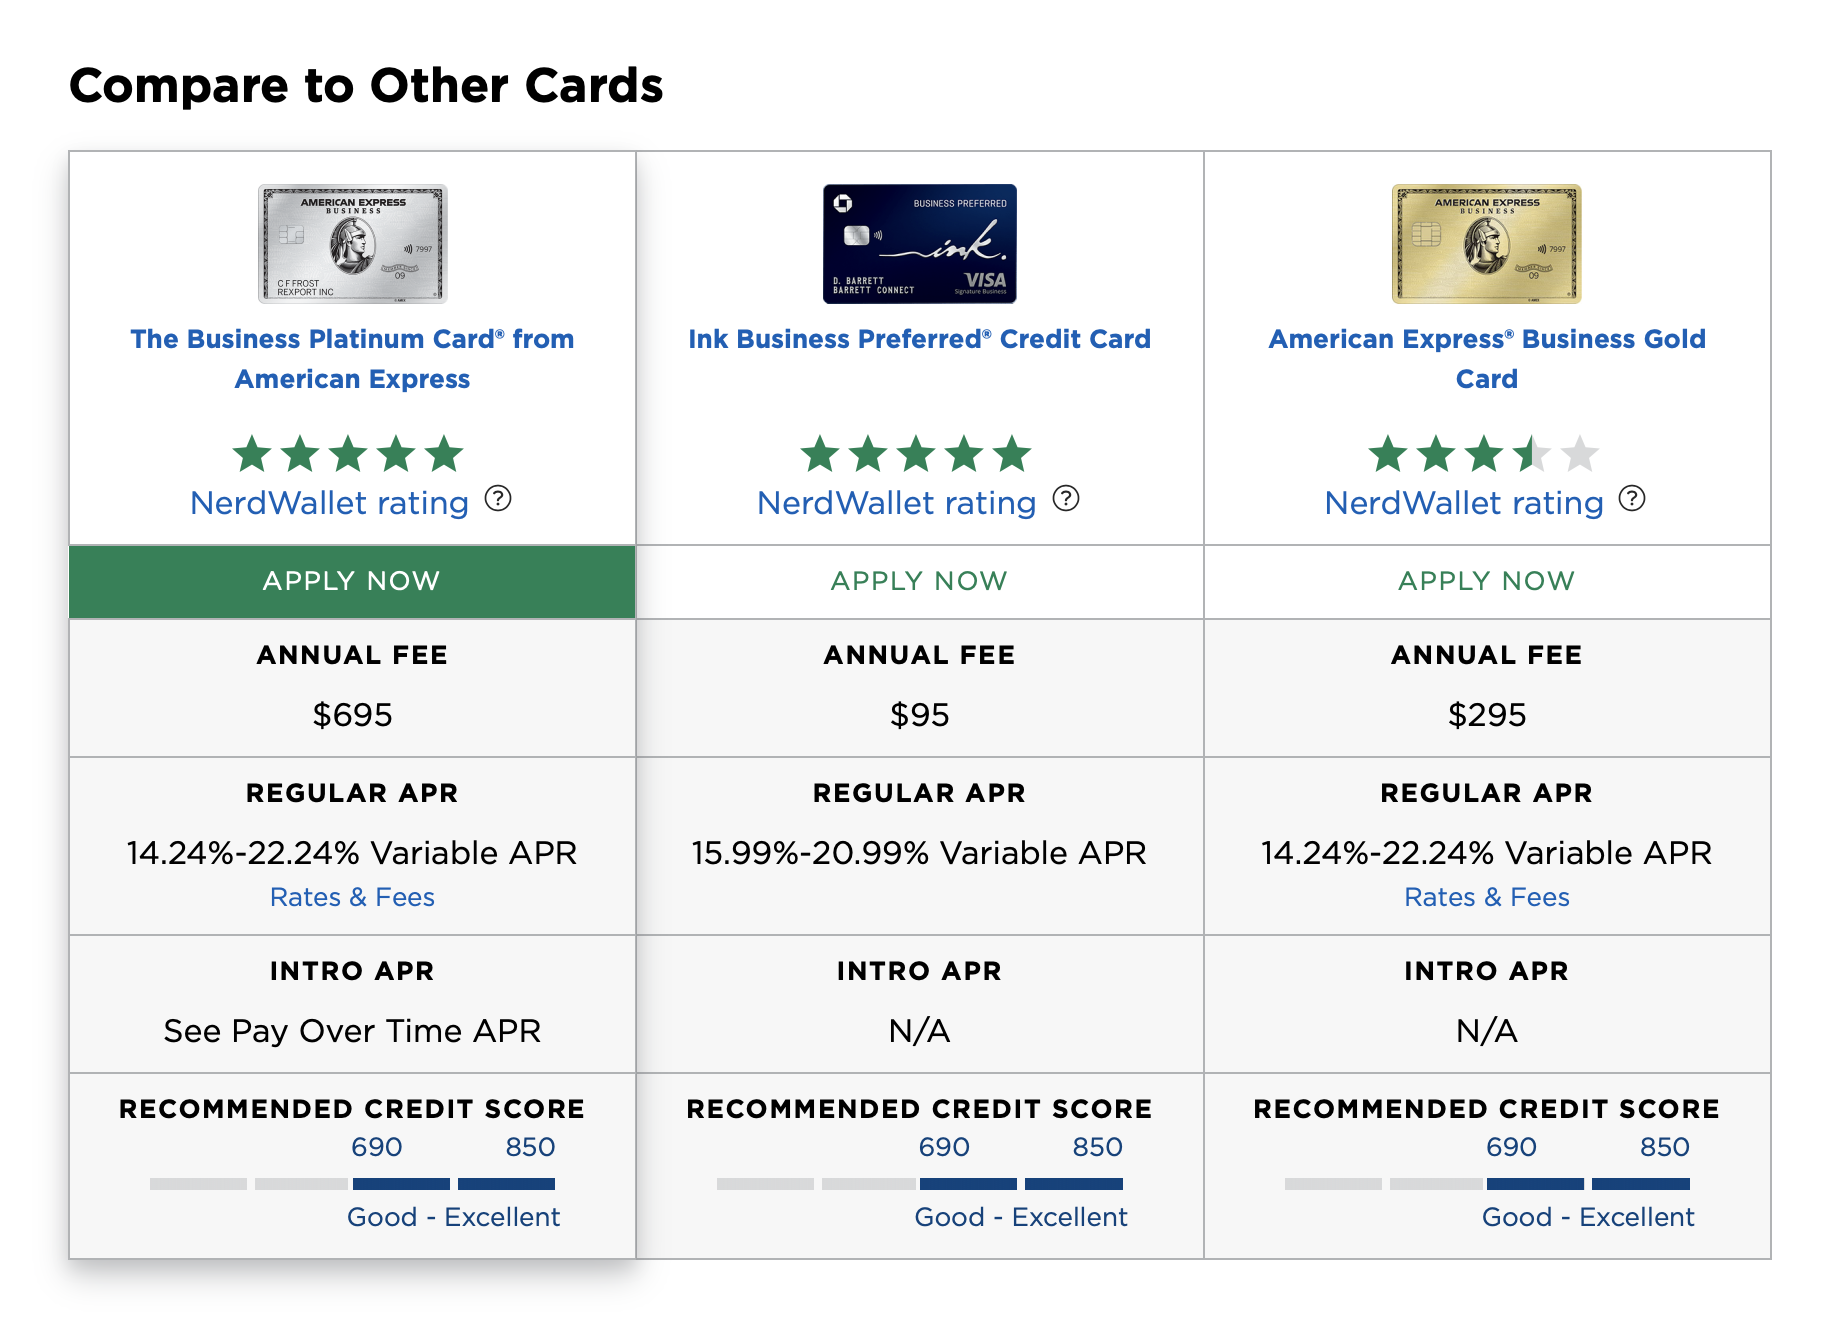 NerdWallet credit card comparison